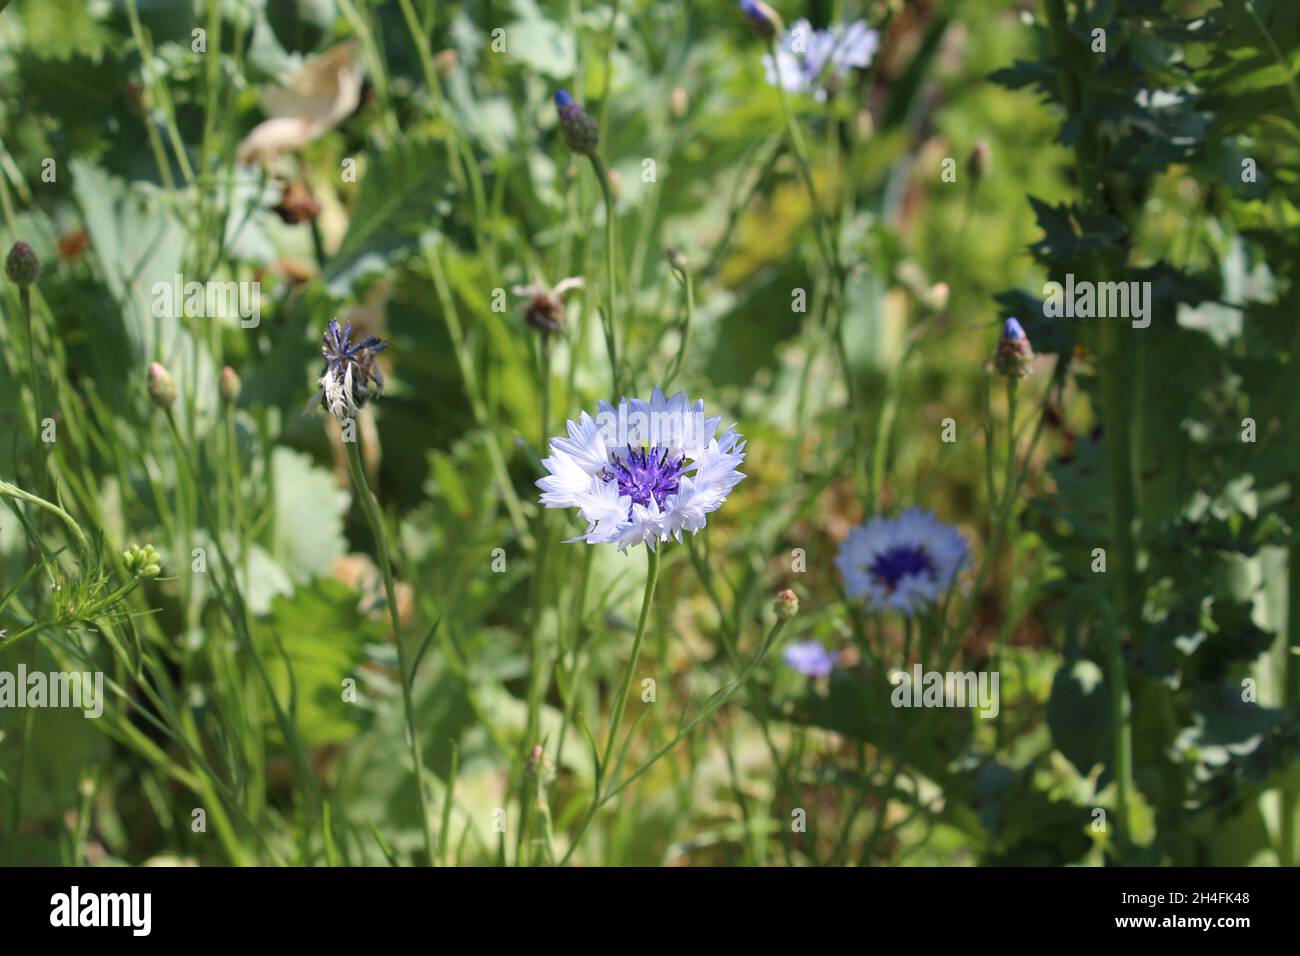 Hellblaue Kornblumen, auch Zyanen genannt, auf die gerade die Sonne scheint, inmitten eines grünen Gartenbeets in Heiden, NRW, Deutschland. Stock Photo